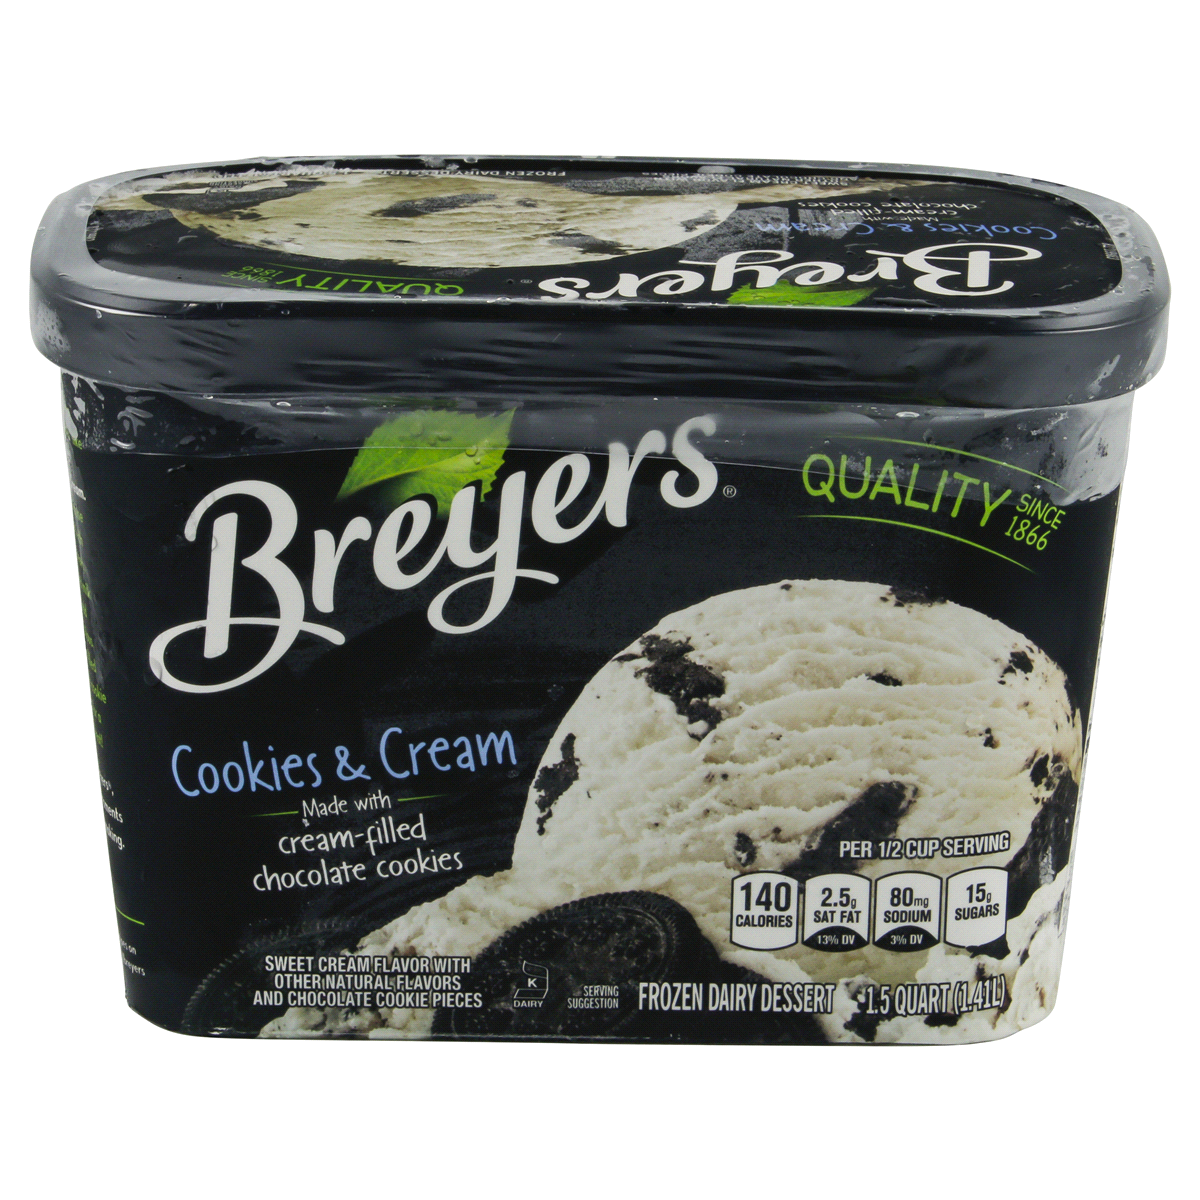 slide 3 of 4, Breyer's Cookies & Cream Frozen Dairy Dessert, 48 oz